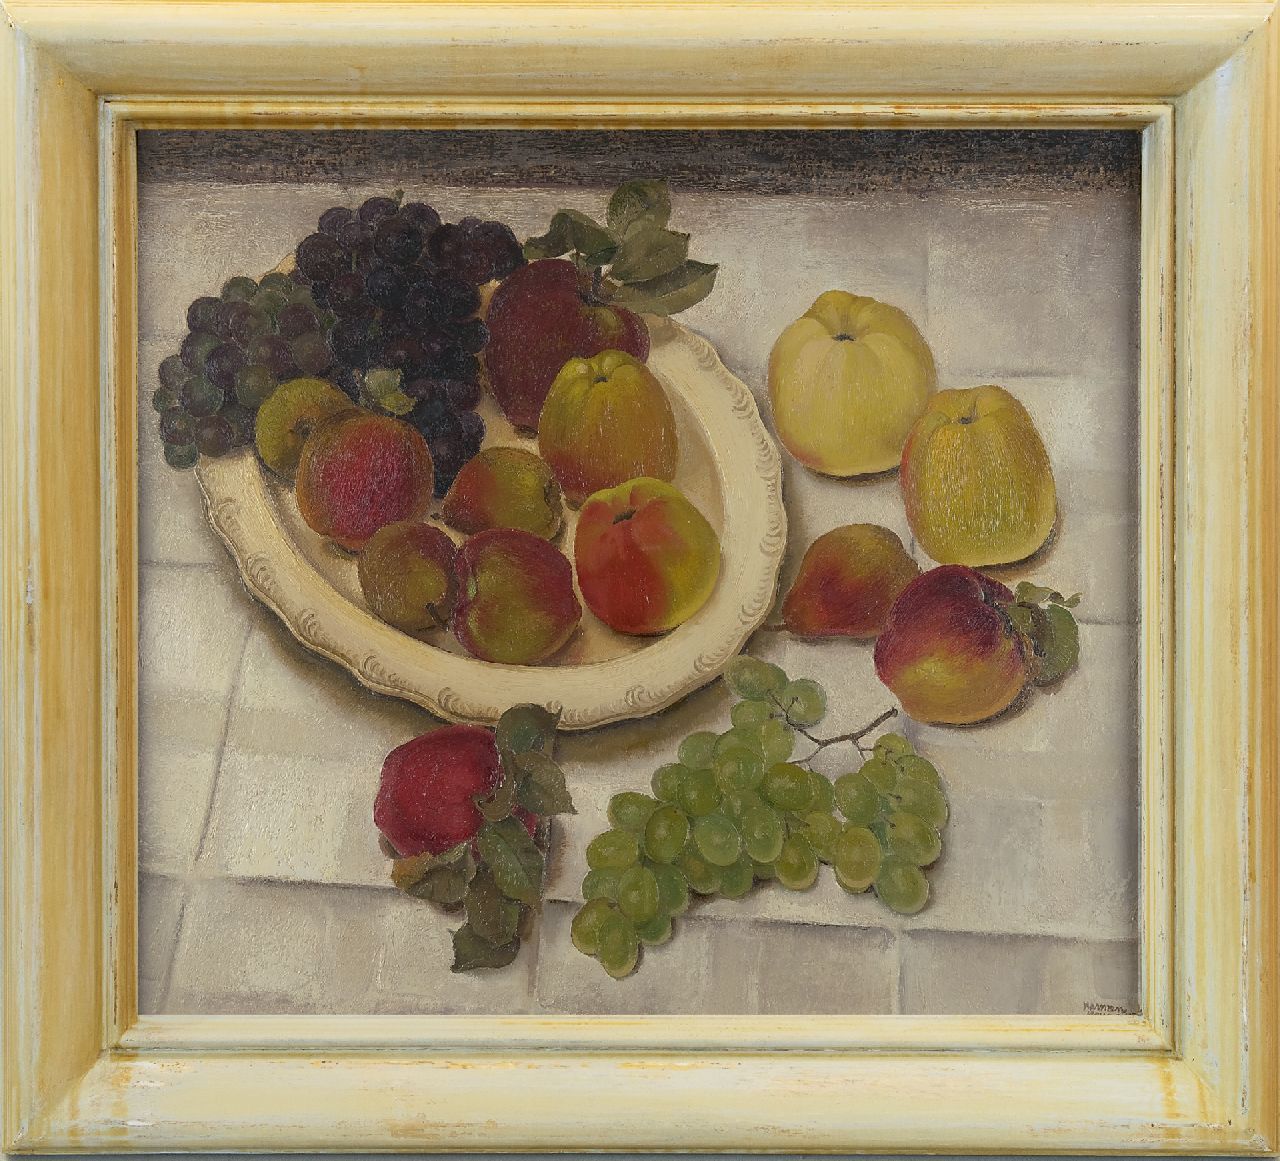 Meurs H.H.  | 'Harmen' Hermanus Meurs | Schilderijen te koop aangeboden | Vruchtenstilleven, olieverf op doek 65,1 x 73,2 cm, gesigneerd rechtsonder en verso en gedateerd 1932